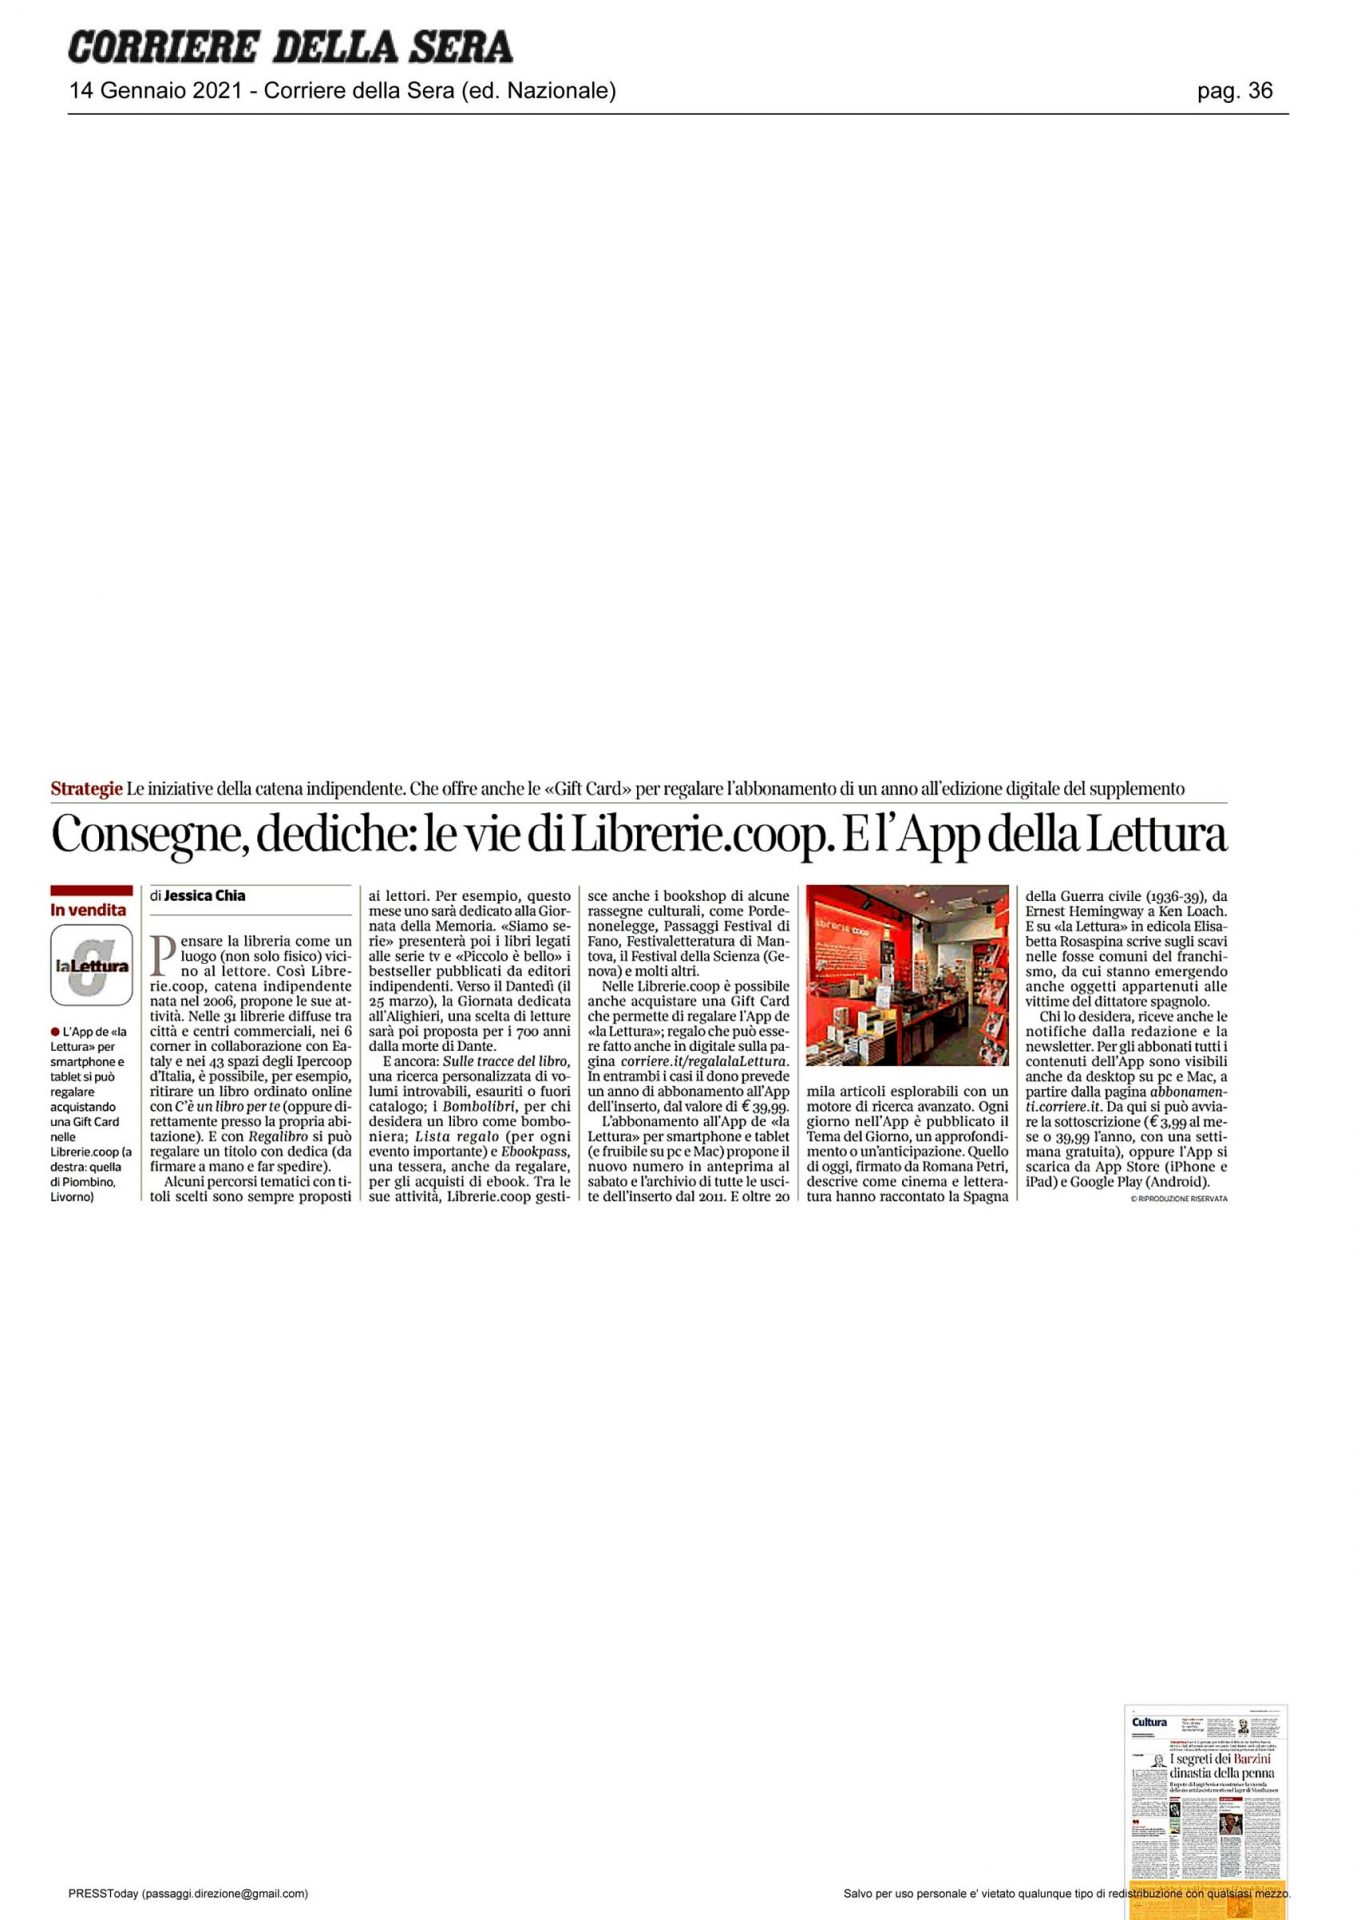 Corriere_della_Sera_consegne_dediche_le_vie_di_librerie_ecoop_e_app_de_la_lettura